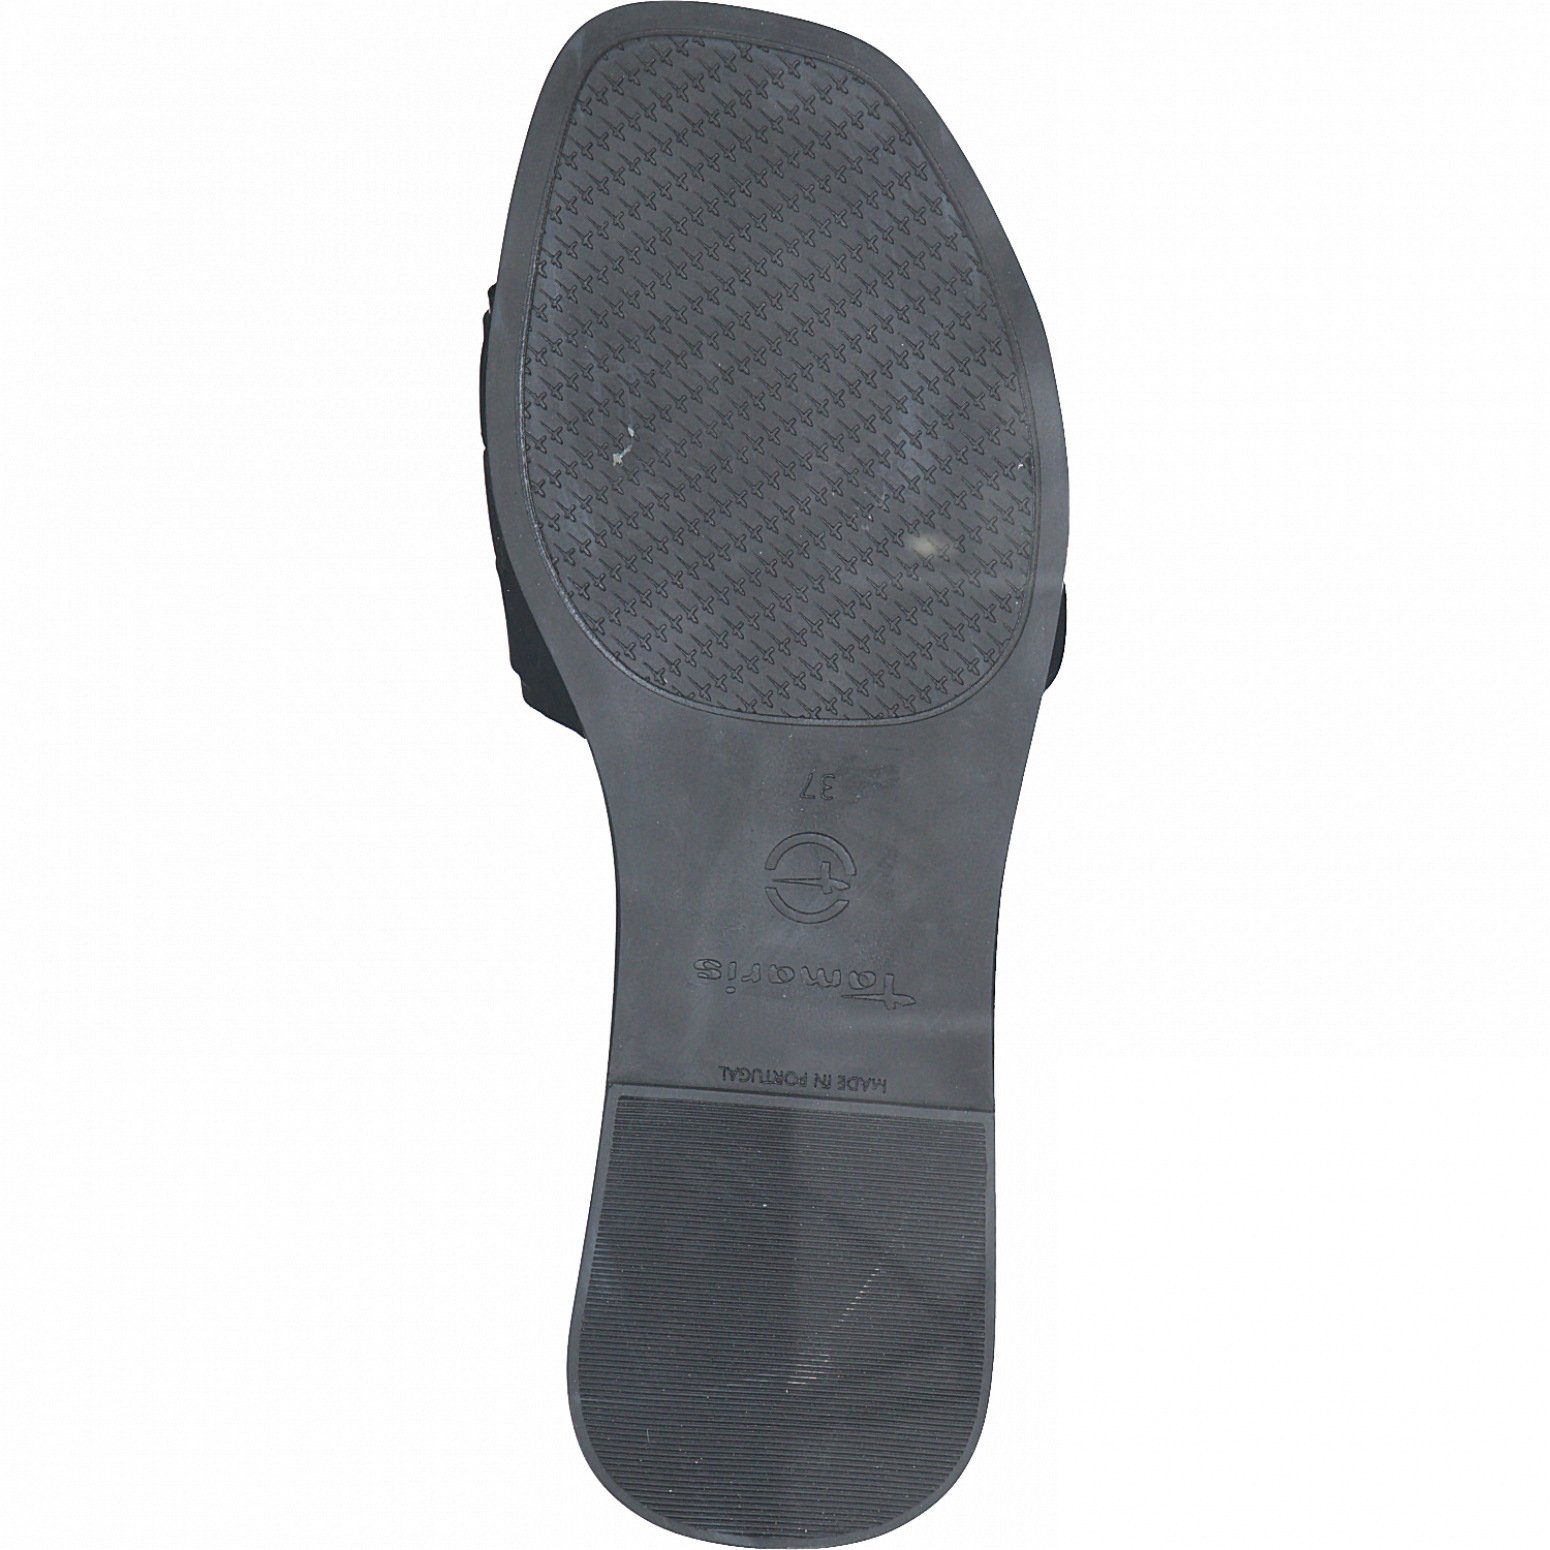 Leather 003 1-27122-28 Sandale Black Tamaris